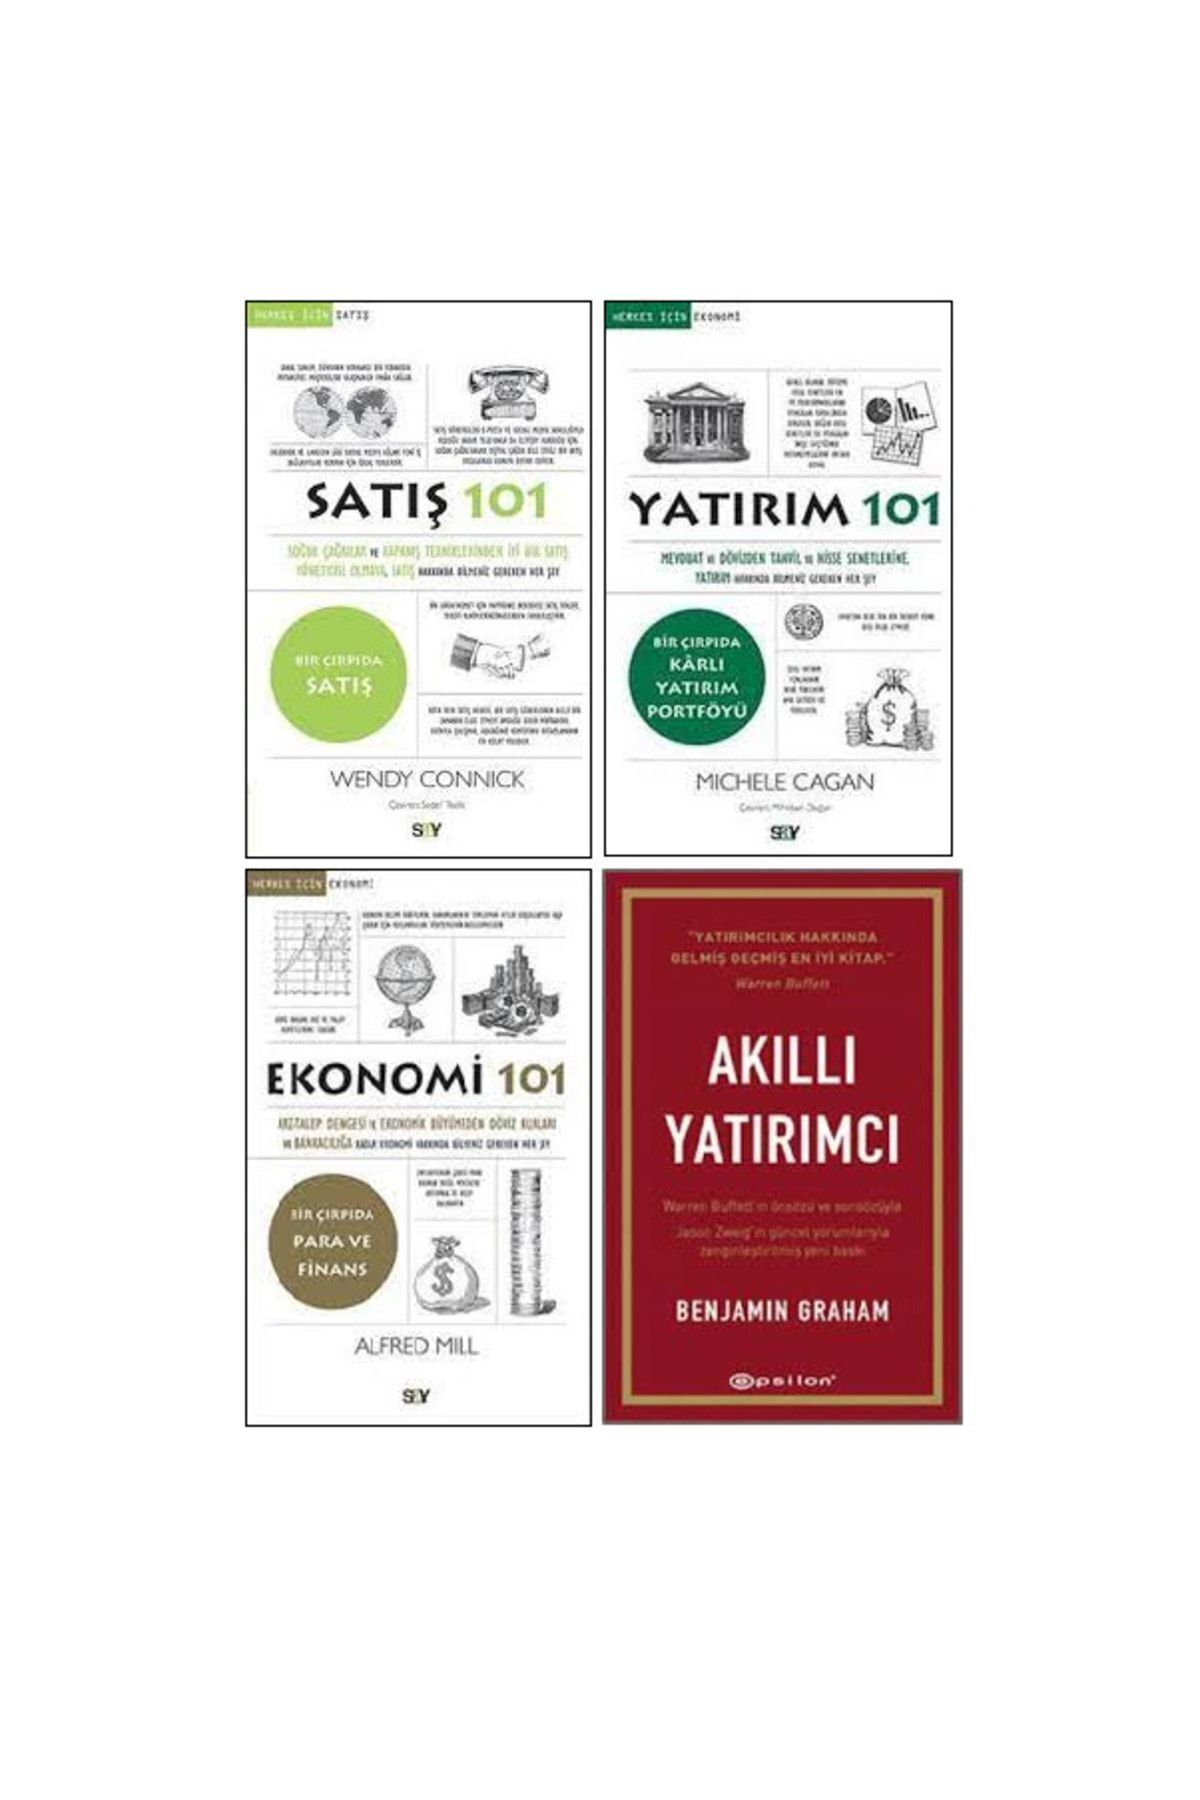 Say Yayınları Satış - Yatırım - Ekonomi 4 Kitap Set - Satış 101 - Yatırım 101 - Ekonomi 101 - Akıllı Yatırımcı